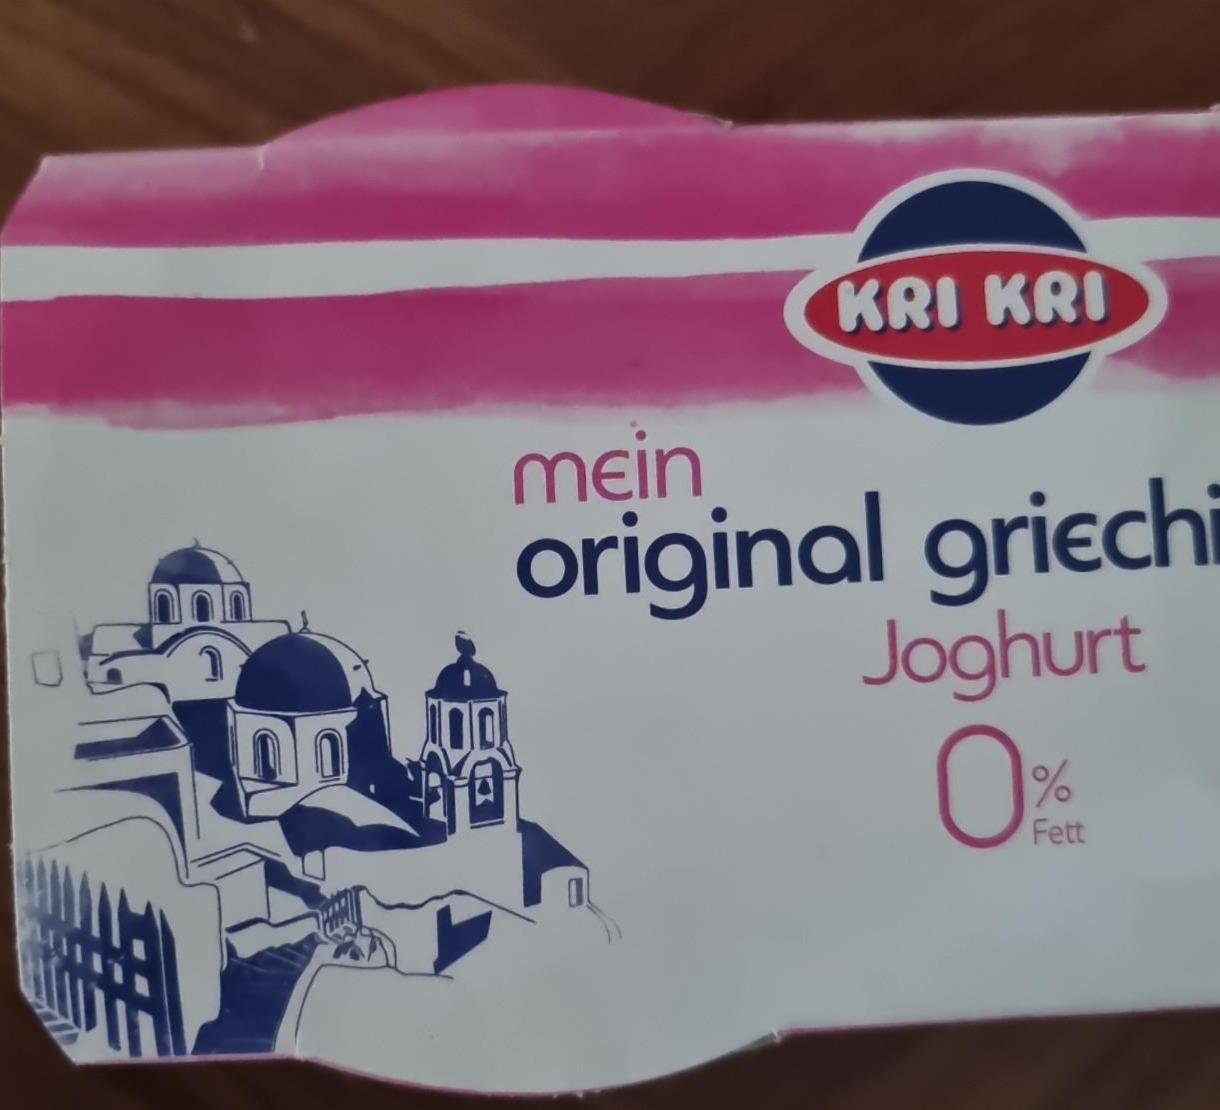 Fotografie - mein original griechische joghurt 0% fett Kri Kri